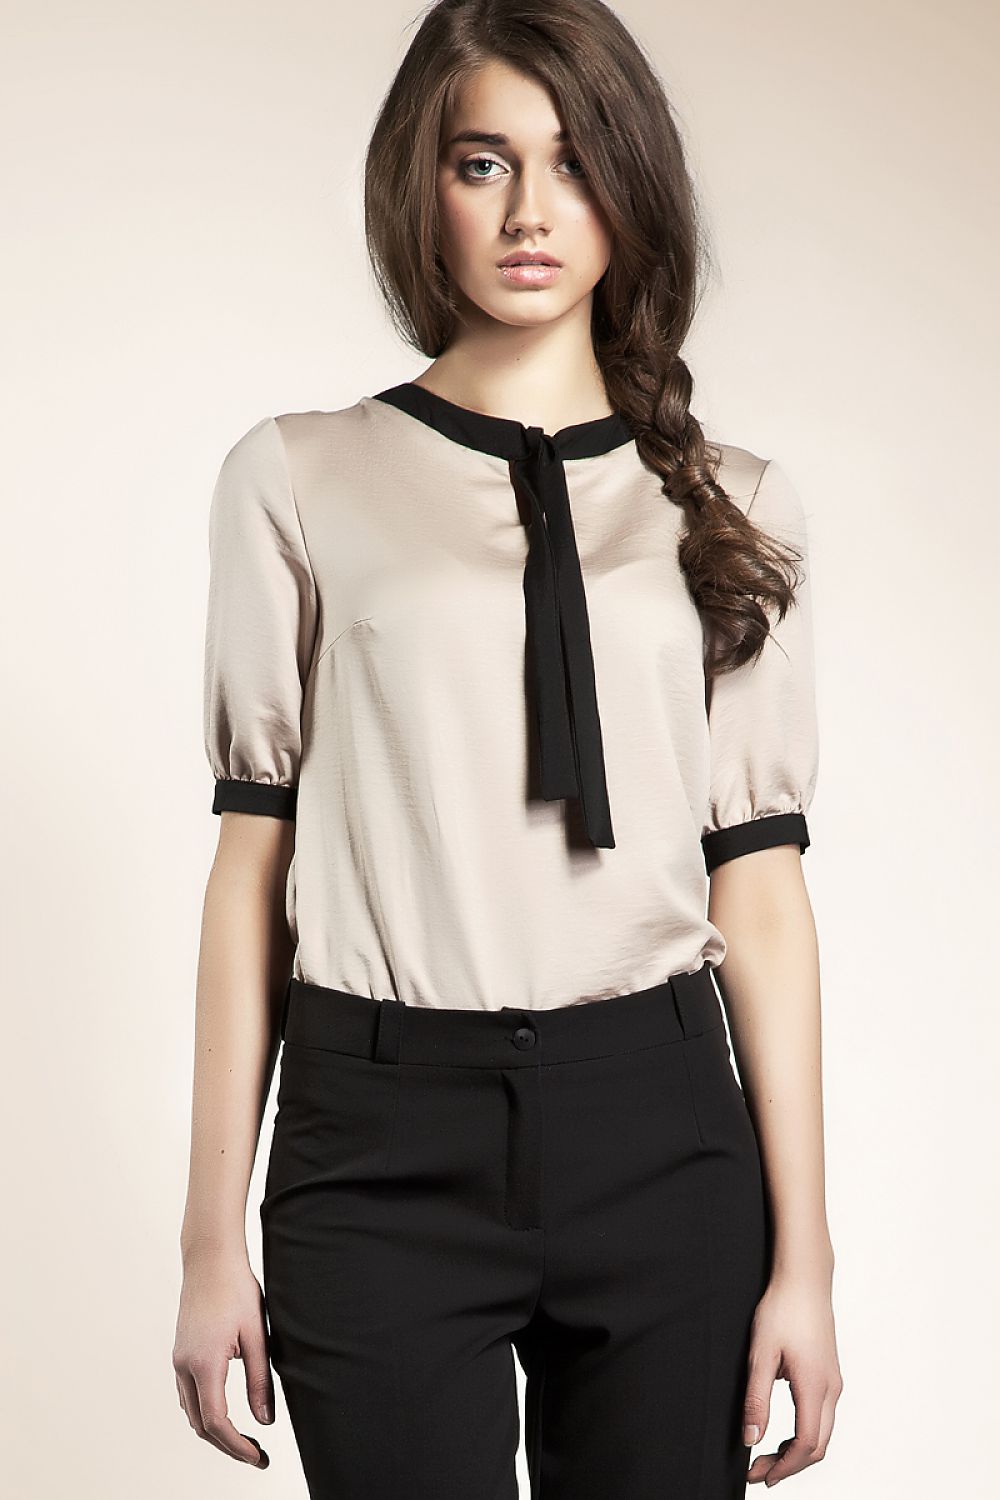 Блузка для офиса. Блузка Nife b15 серый. Девушка в блузке. Молодежные блузки. Блузка с коротким рукавом.